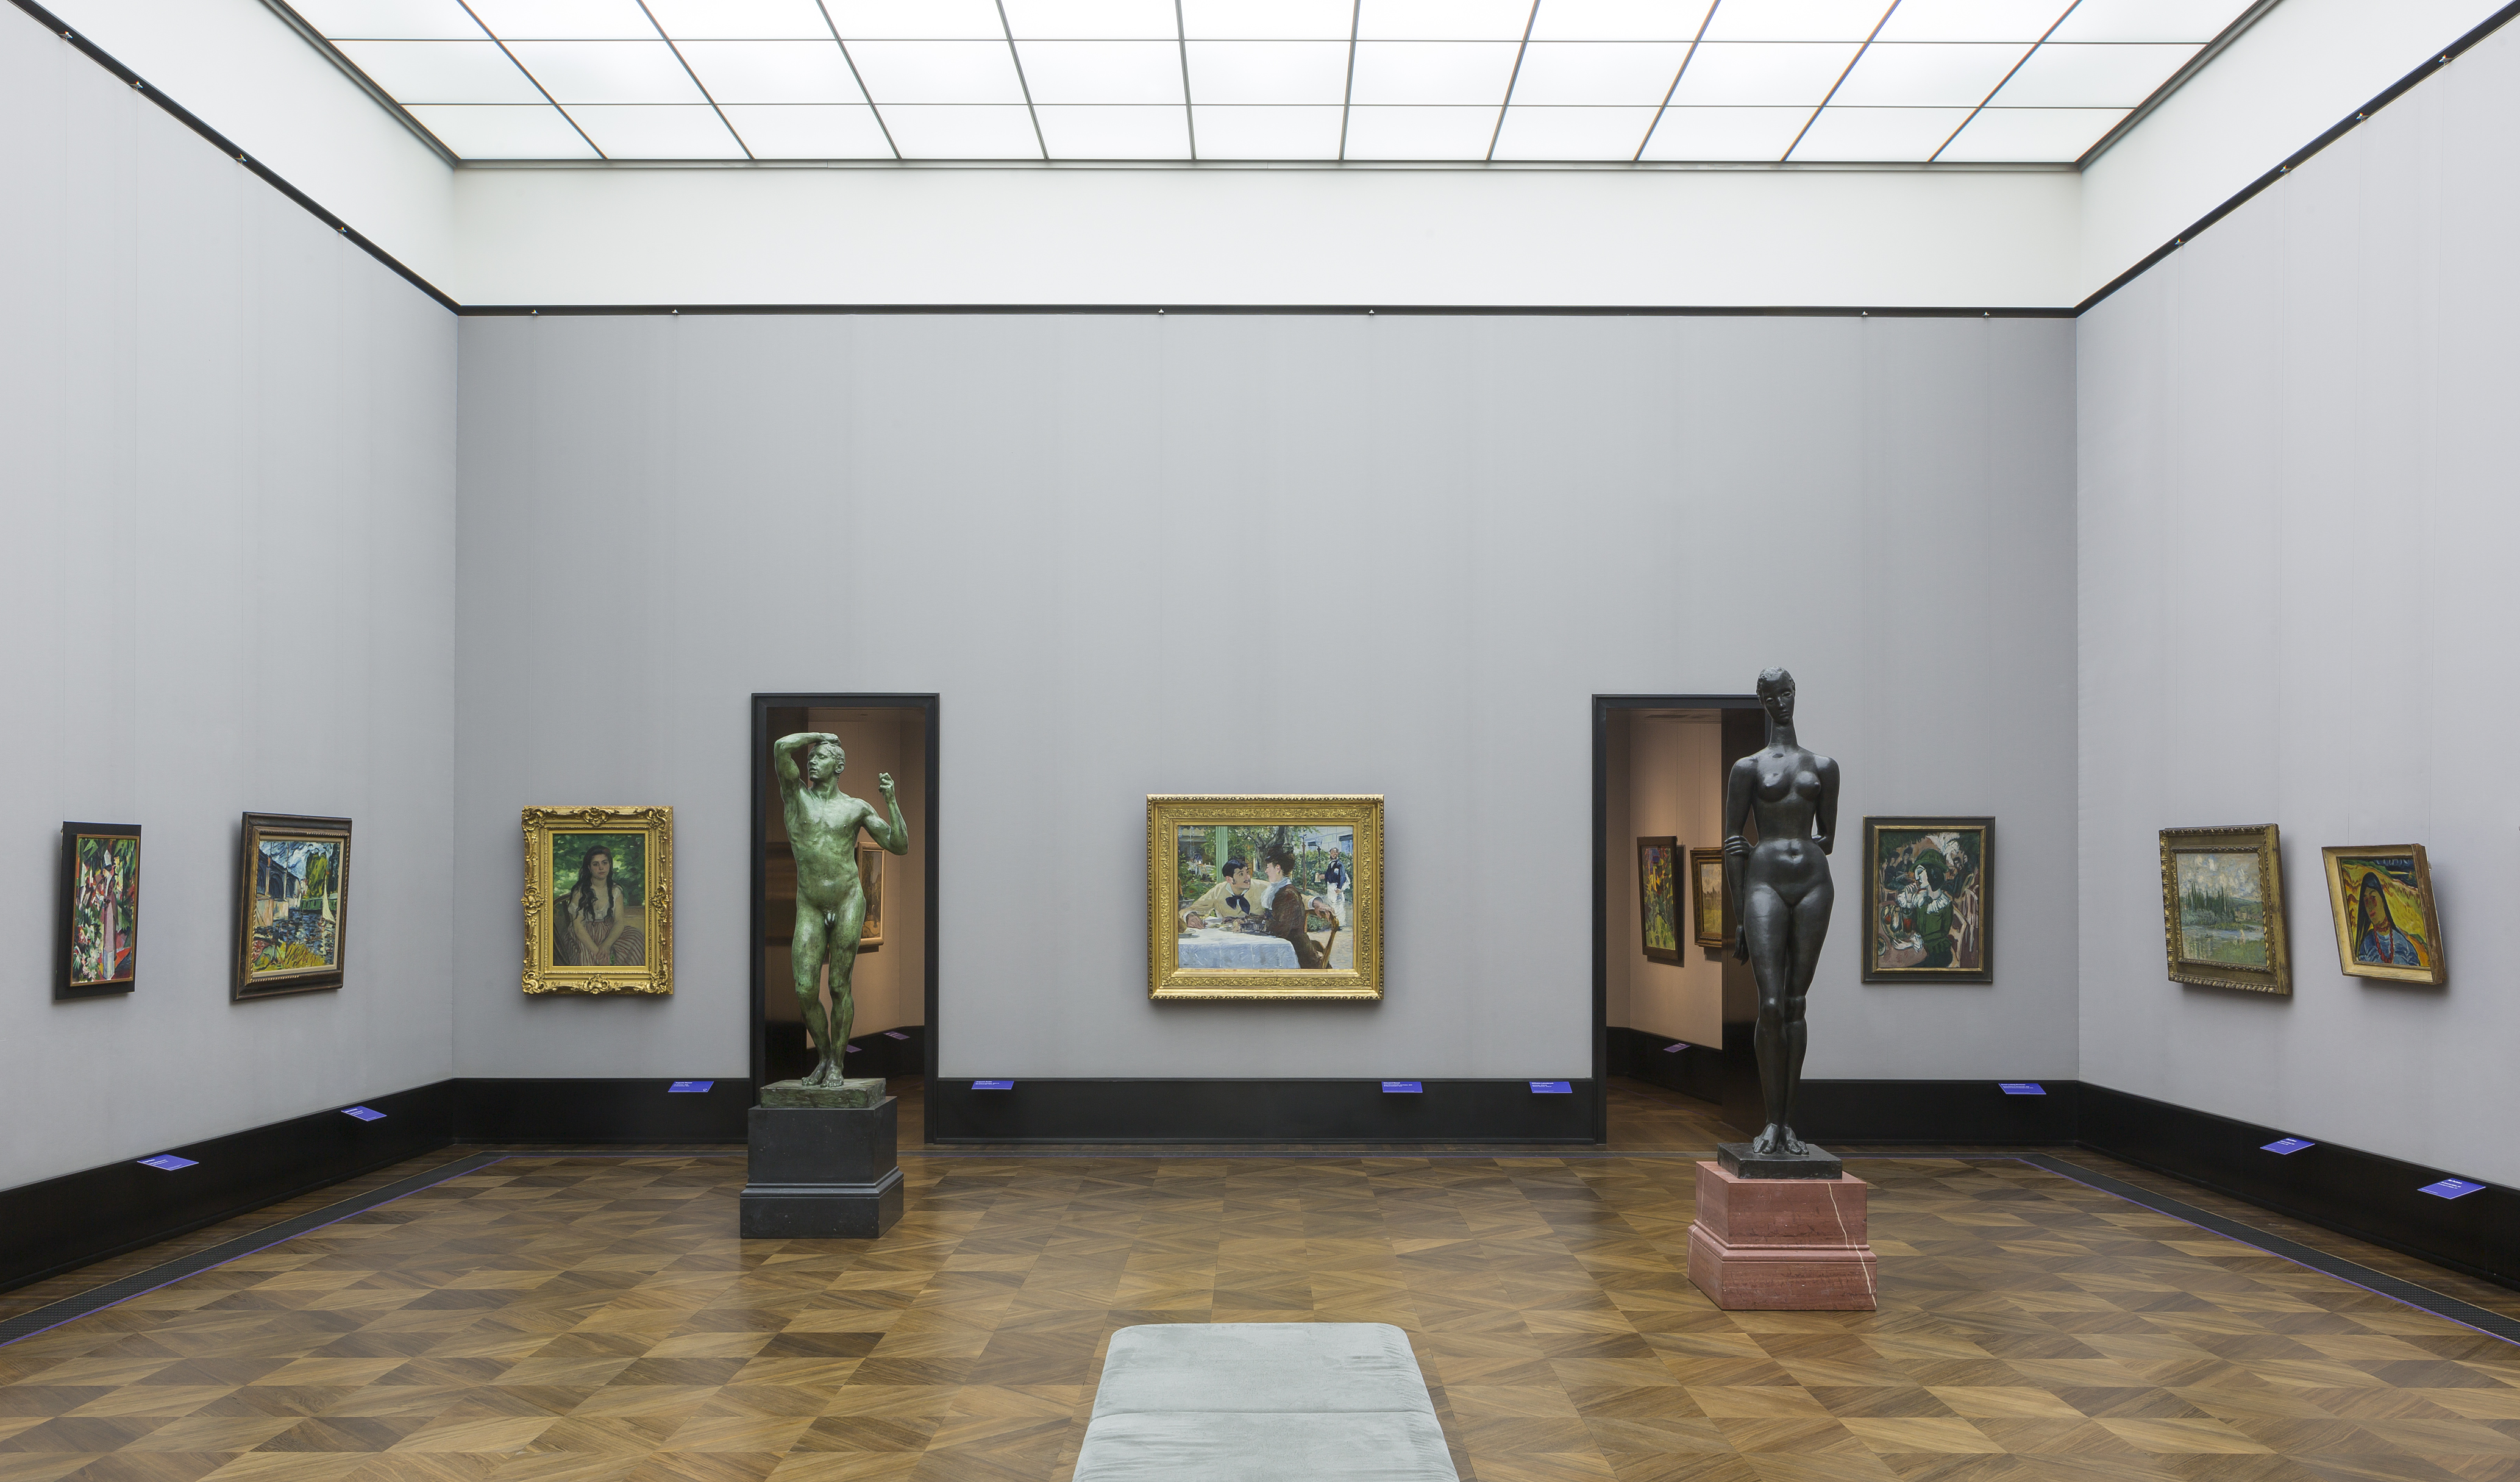 ImEx - Impressionismus / Expressionismus in der Alten Nationalgalerie in Berlin. Foto: David von Becker